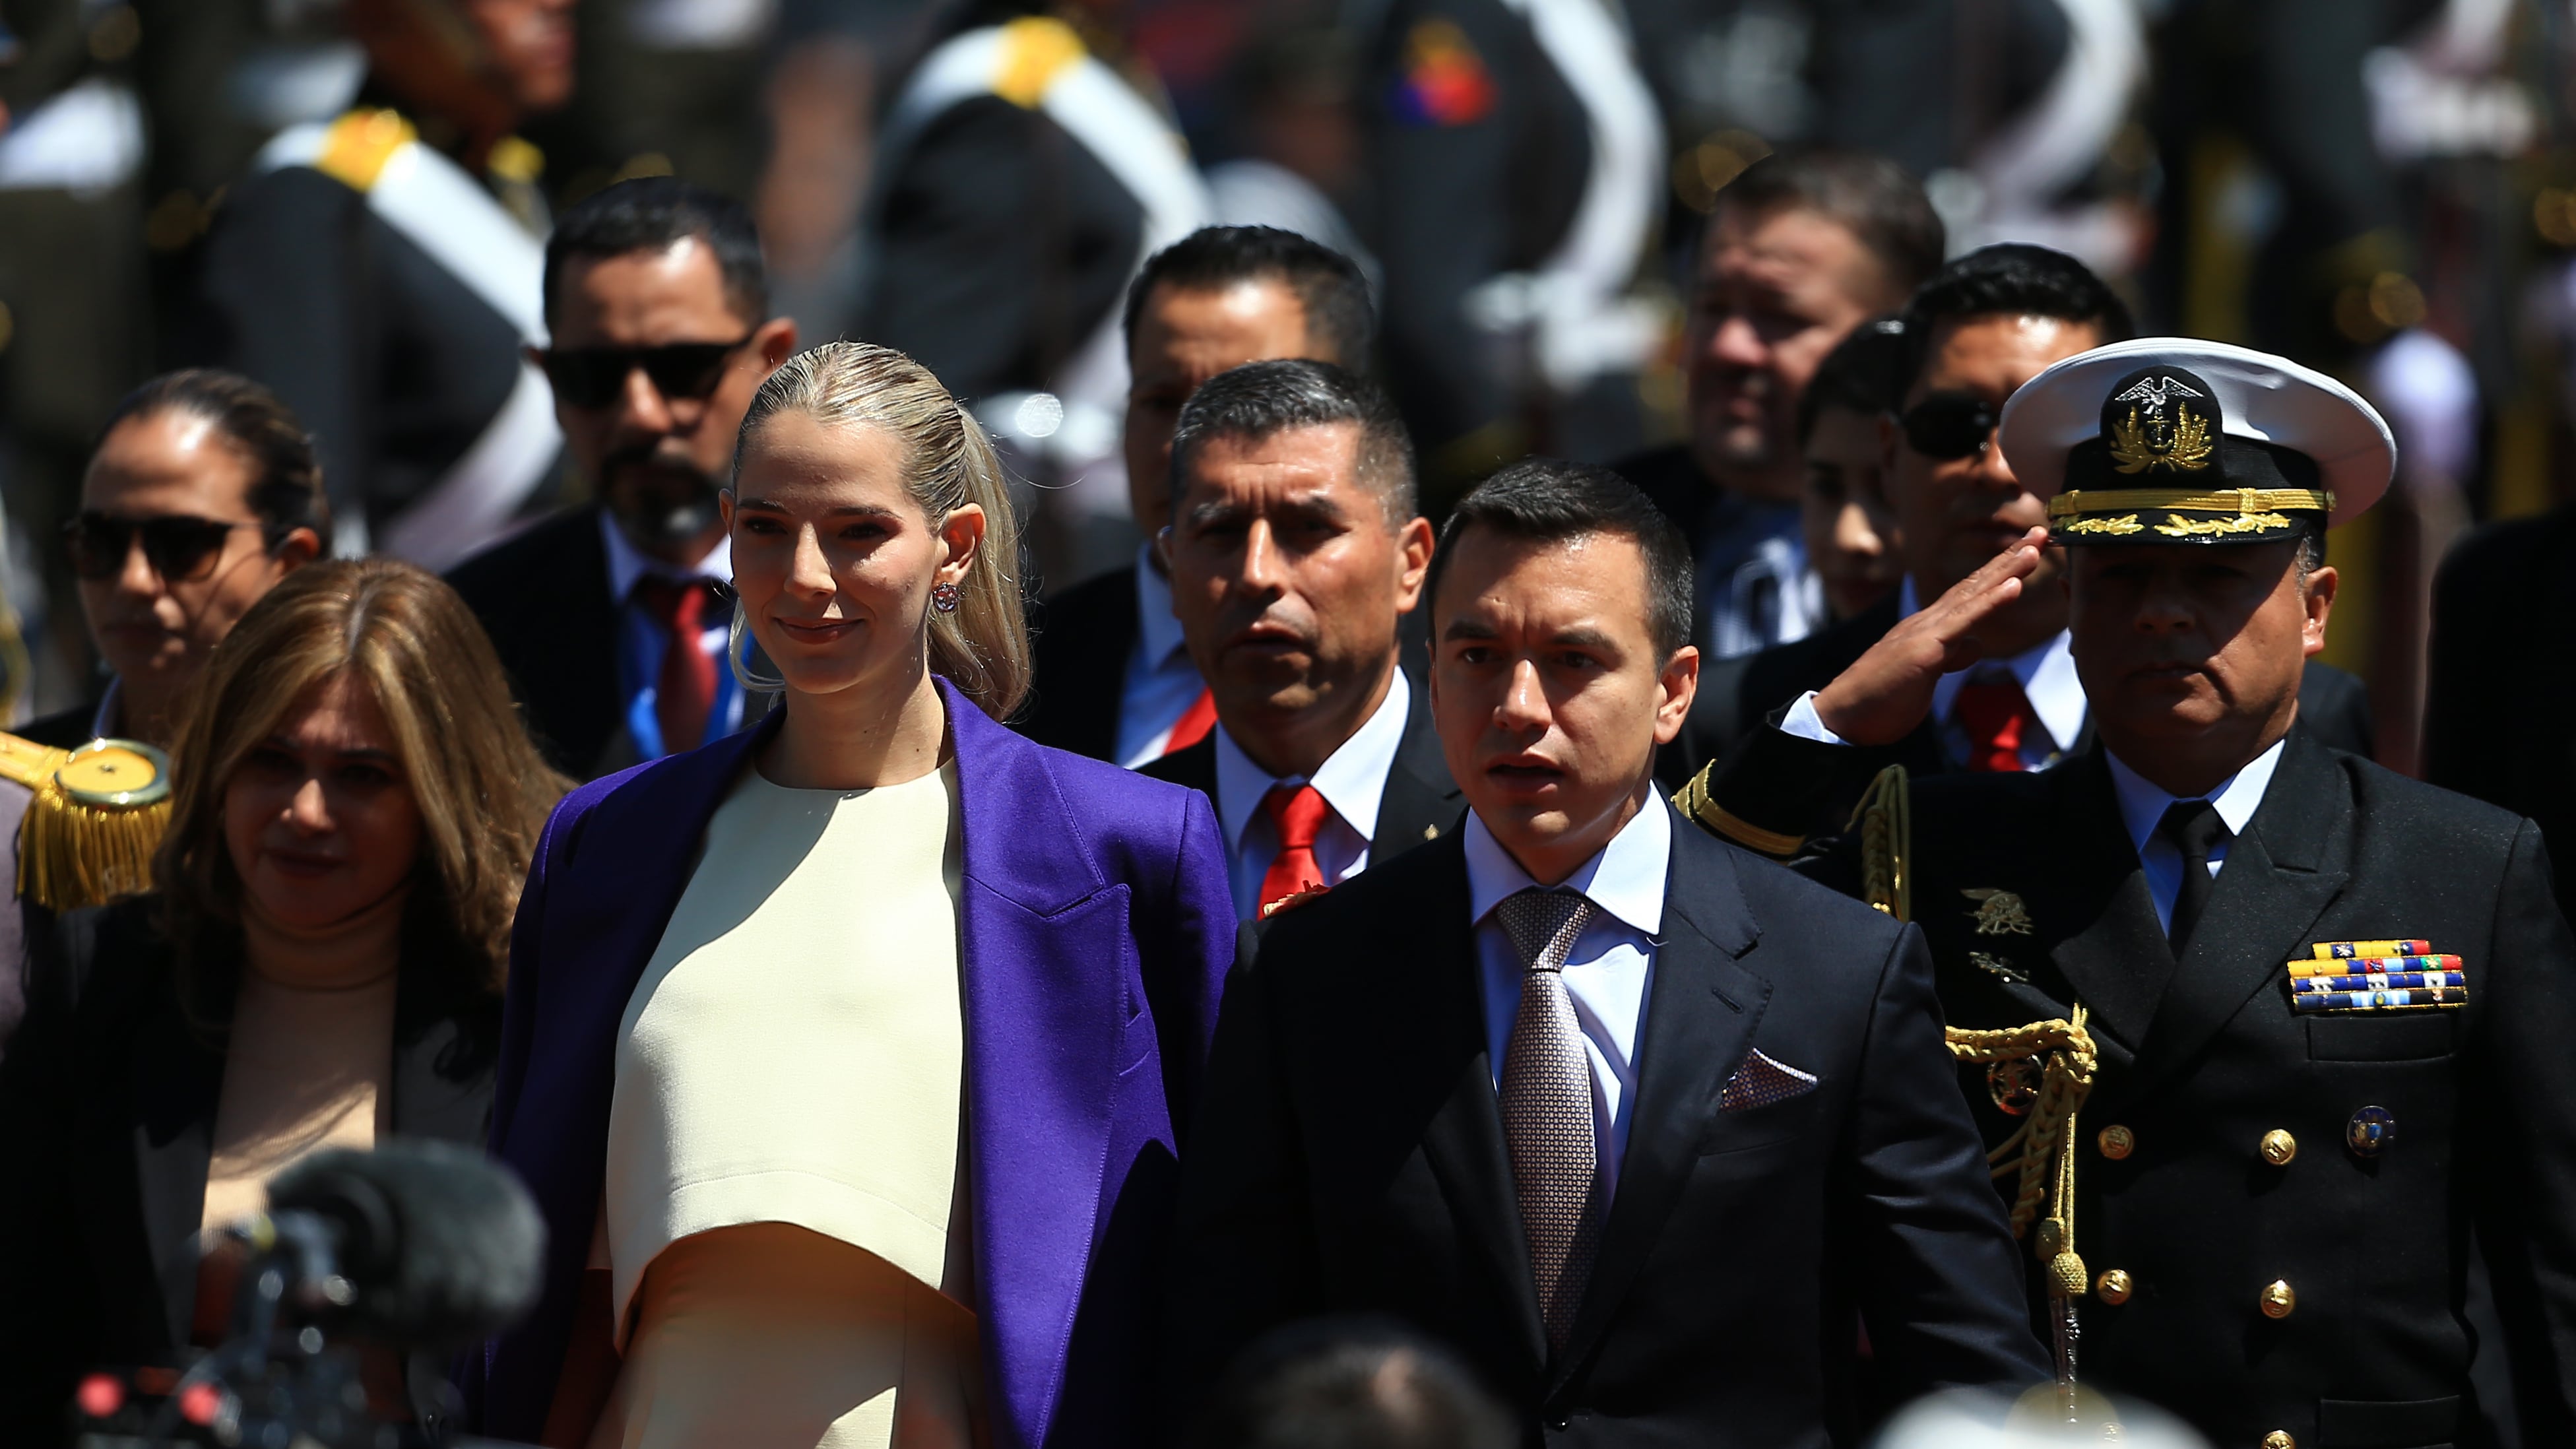 El presidnete Daniel Noboa, acompañado de su esposa, Lavinia Valbonesi llega para su ceremonia de investidura en la Asamblea